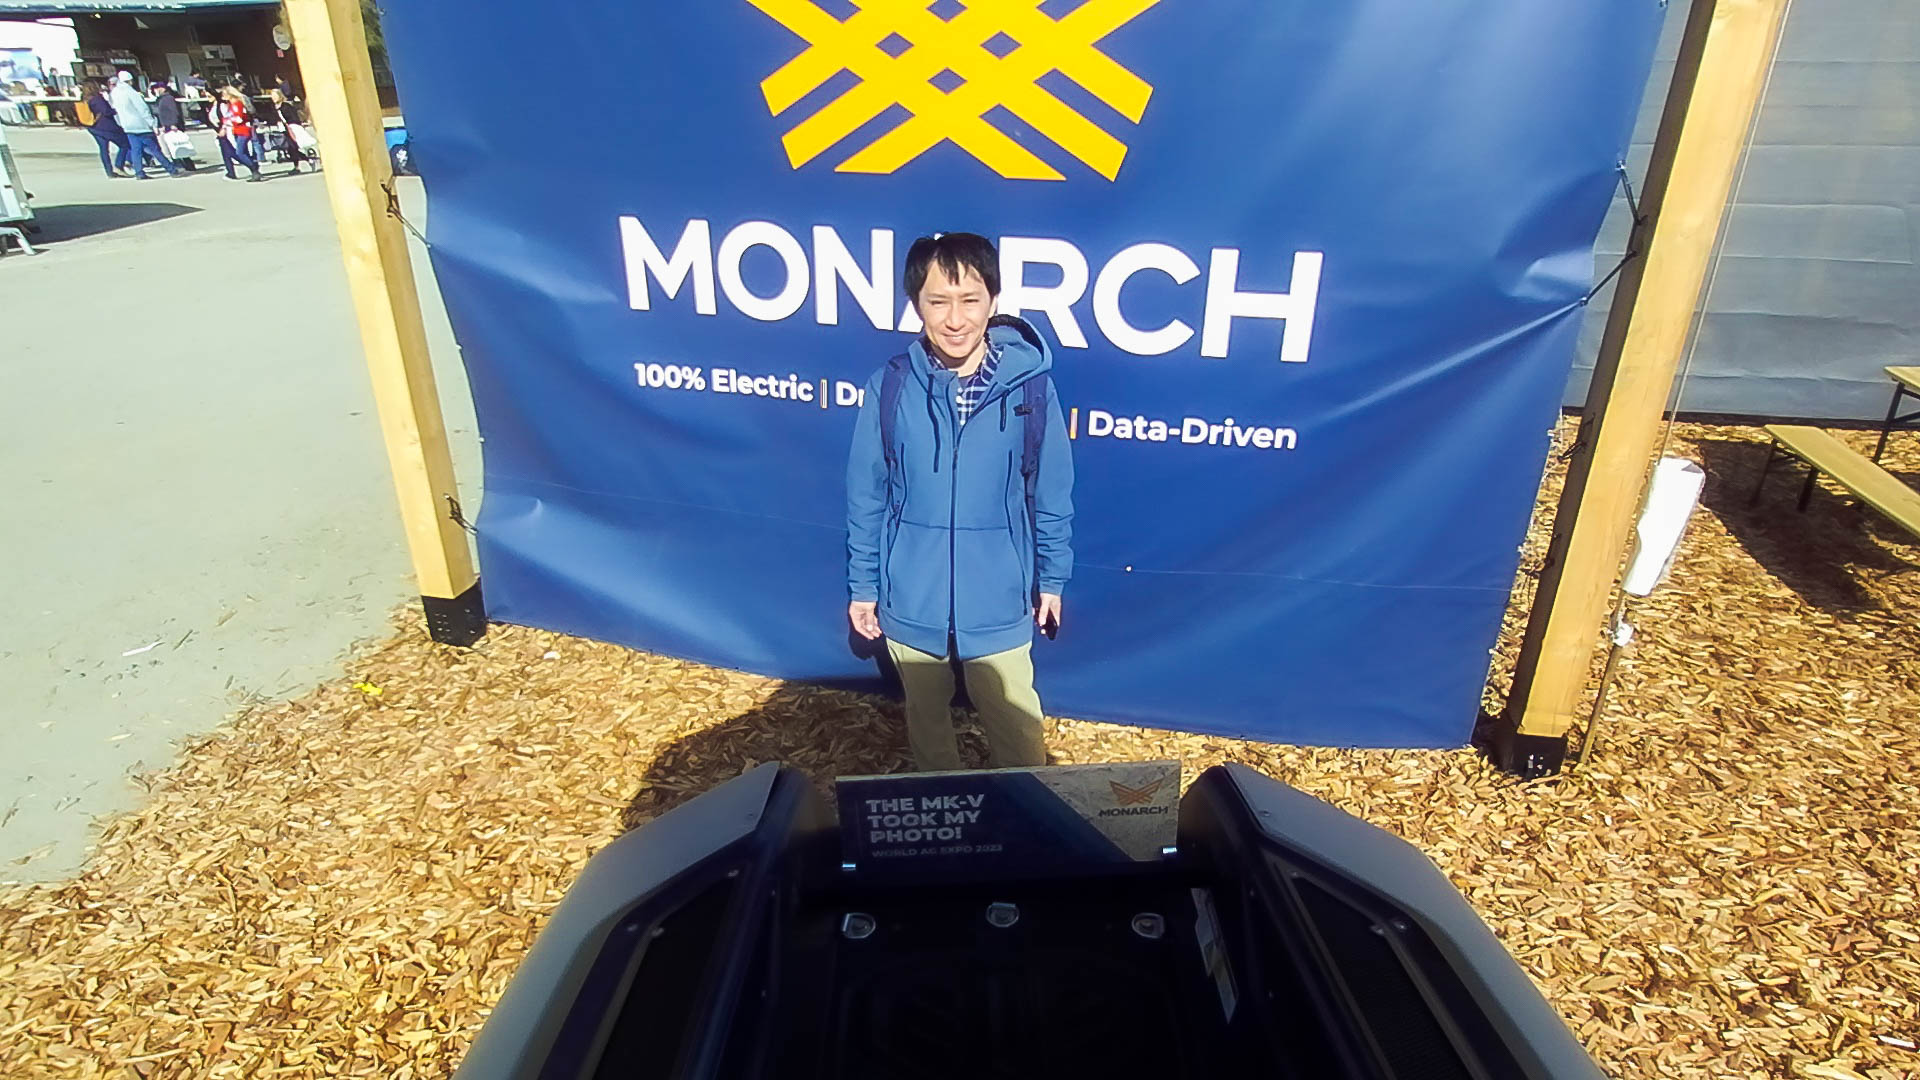 113-Monarch-Tractor-Selfie#2